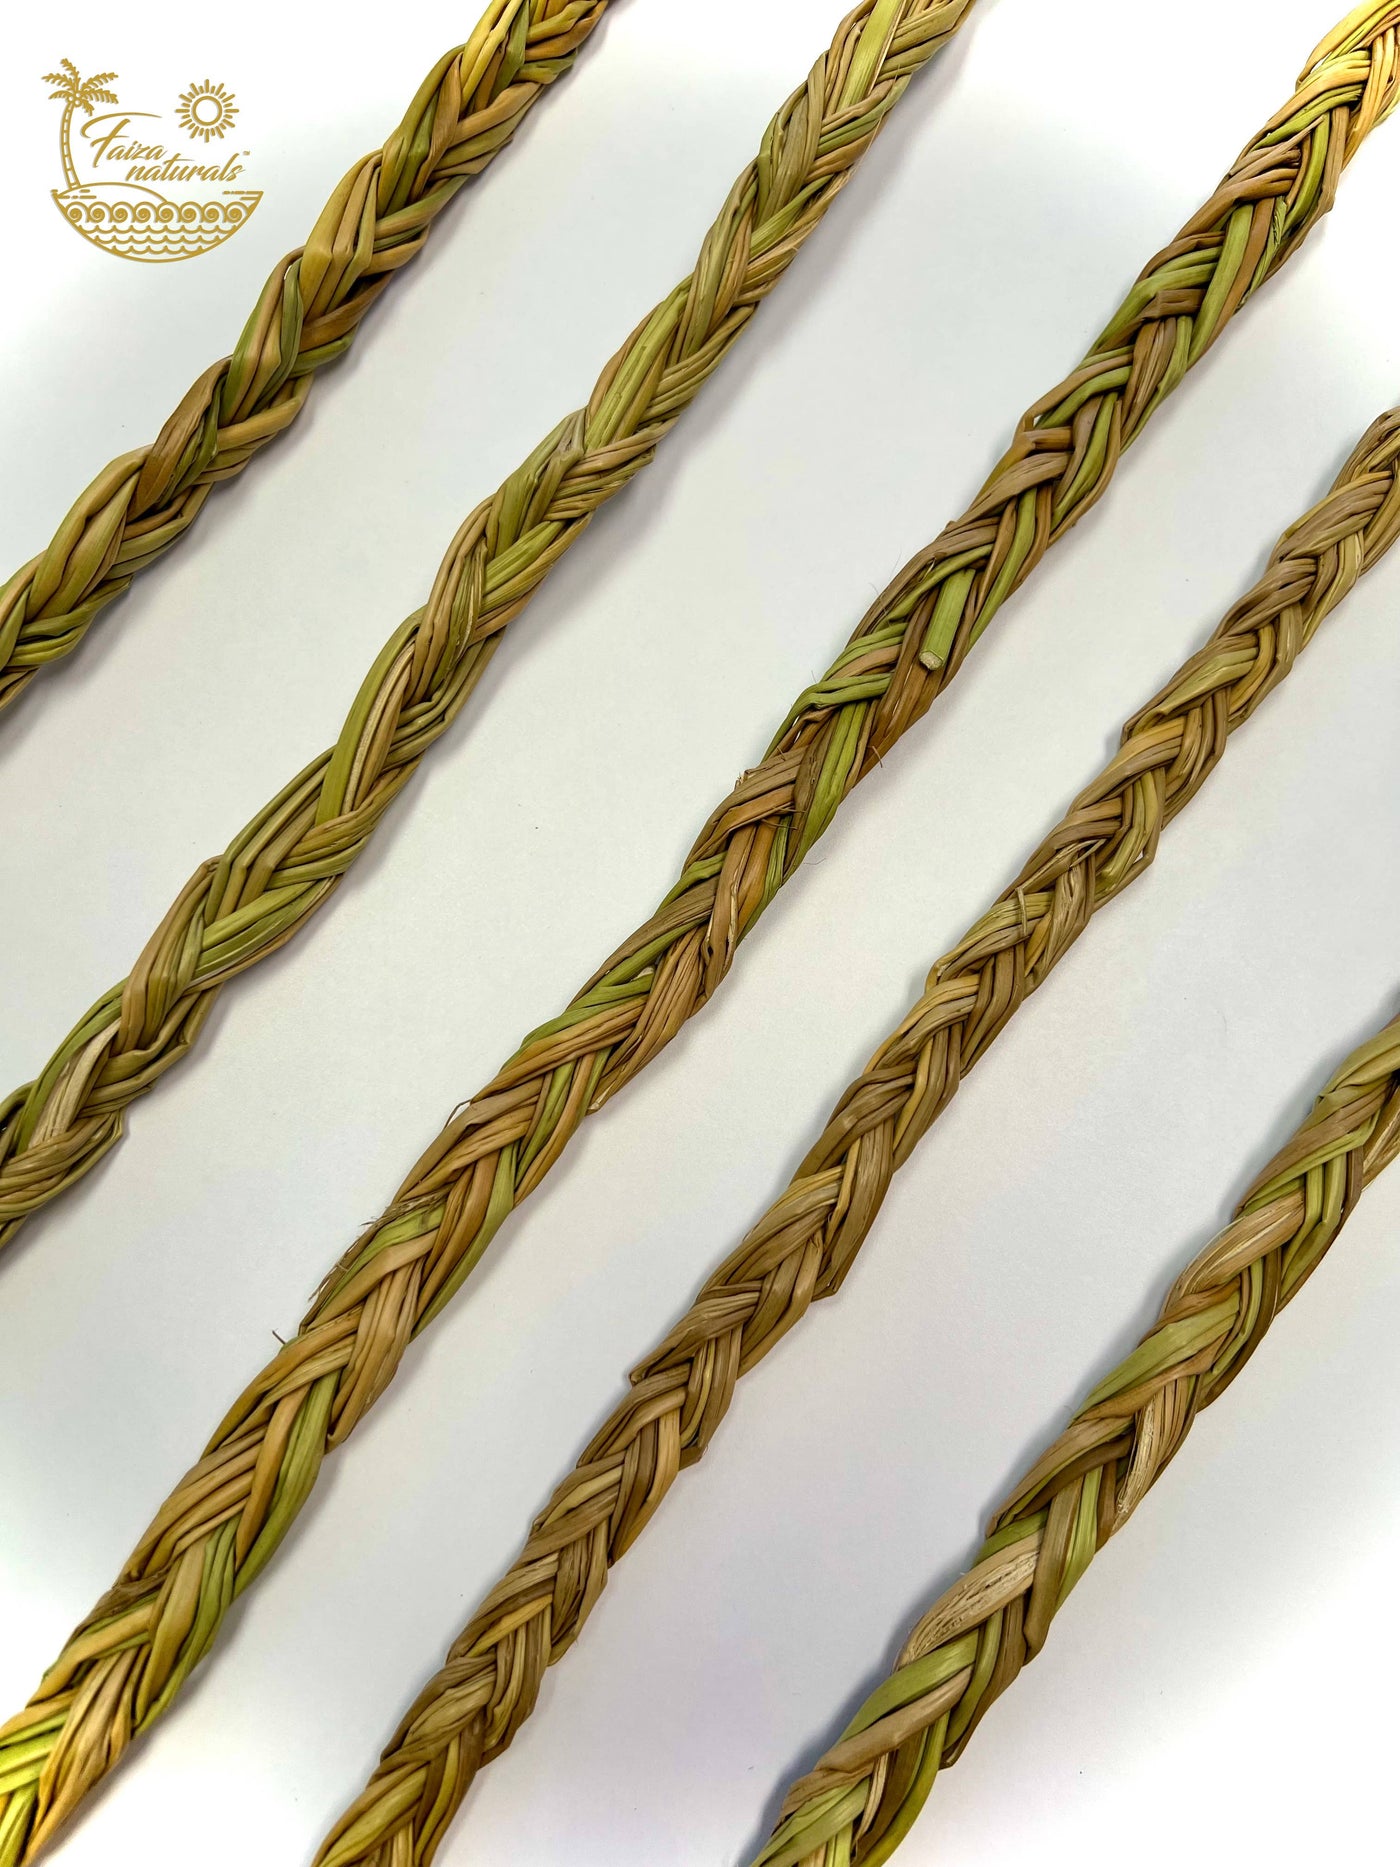 Faiza Naturals - Sweetgrass Braids (20 inch)